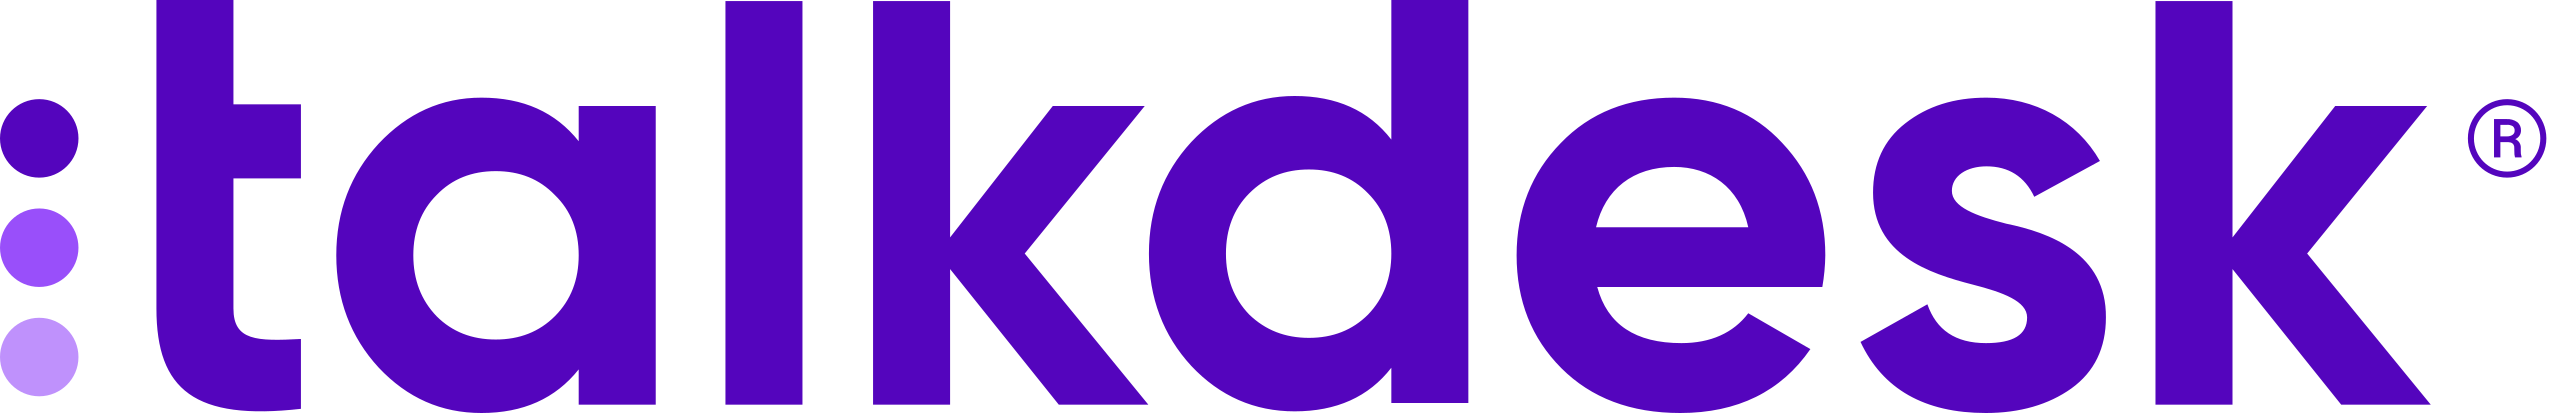 Talkdesk_Logo